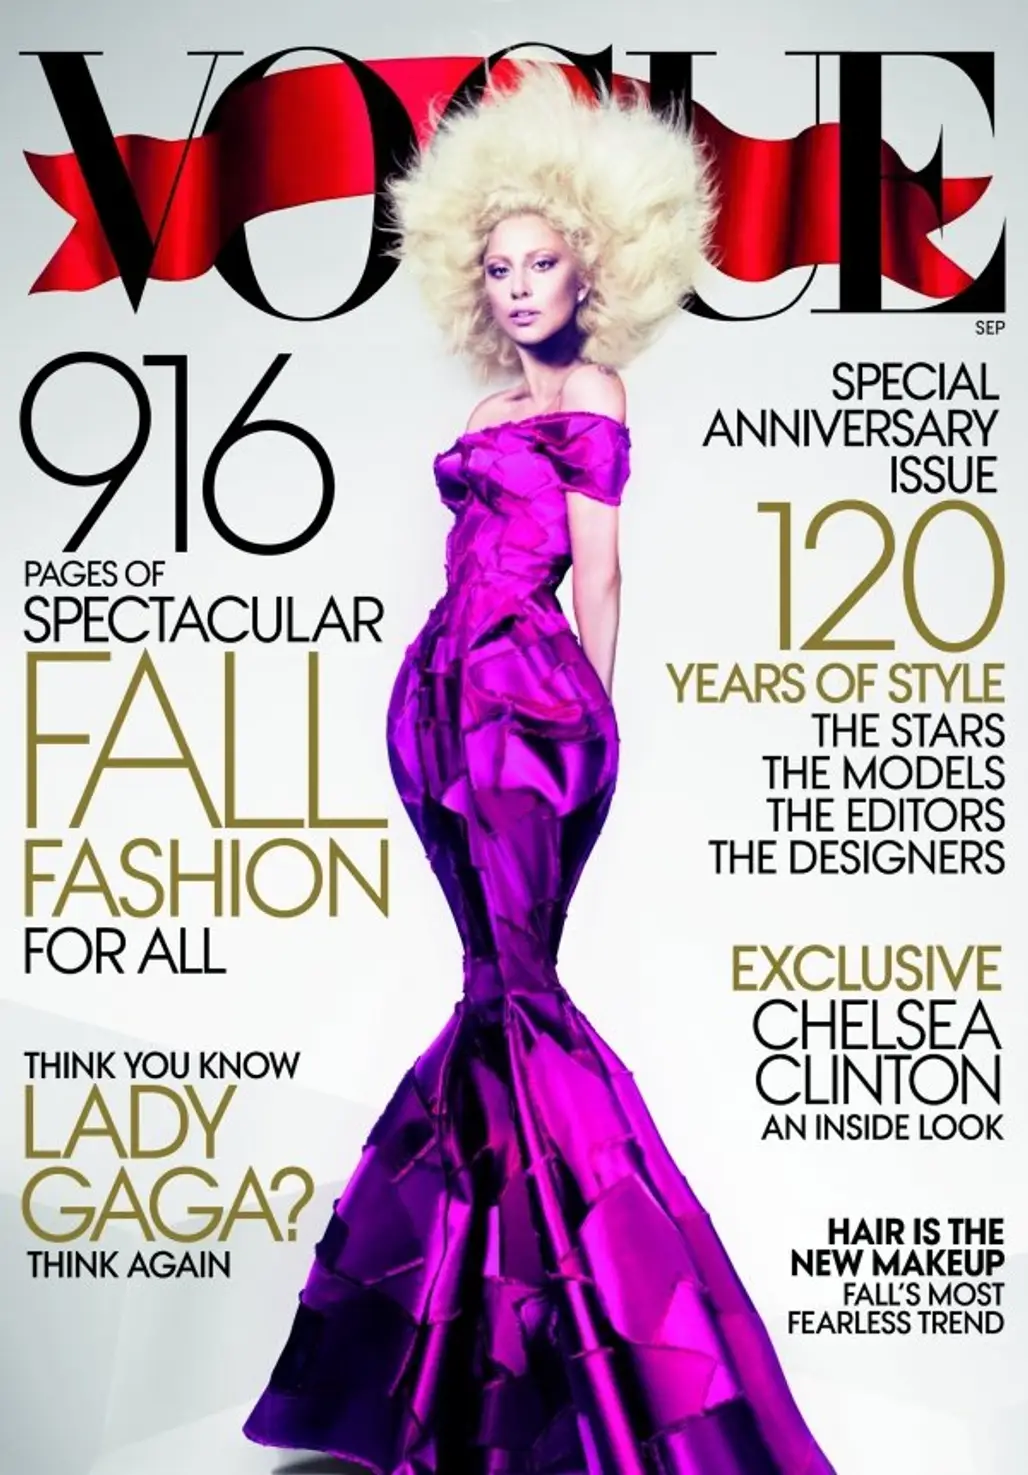 Vogue, Sept 2012